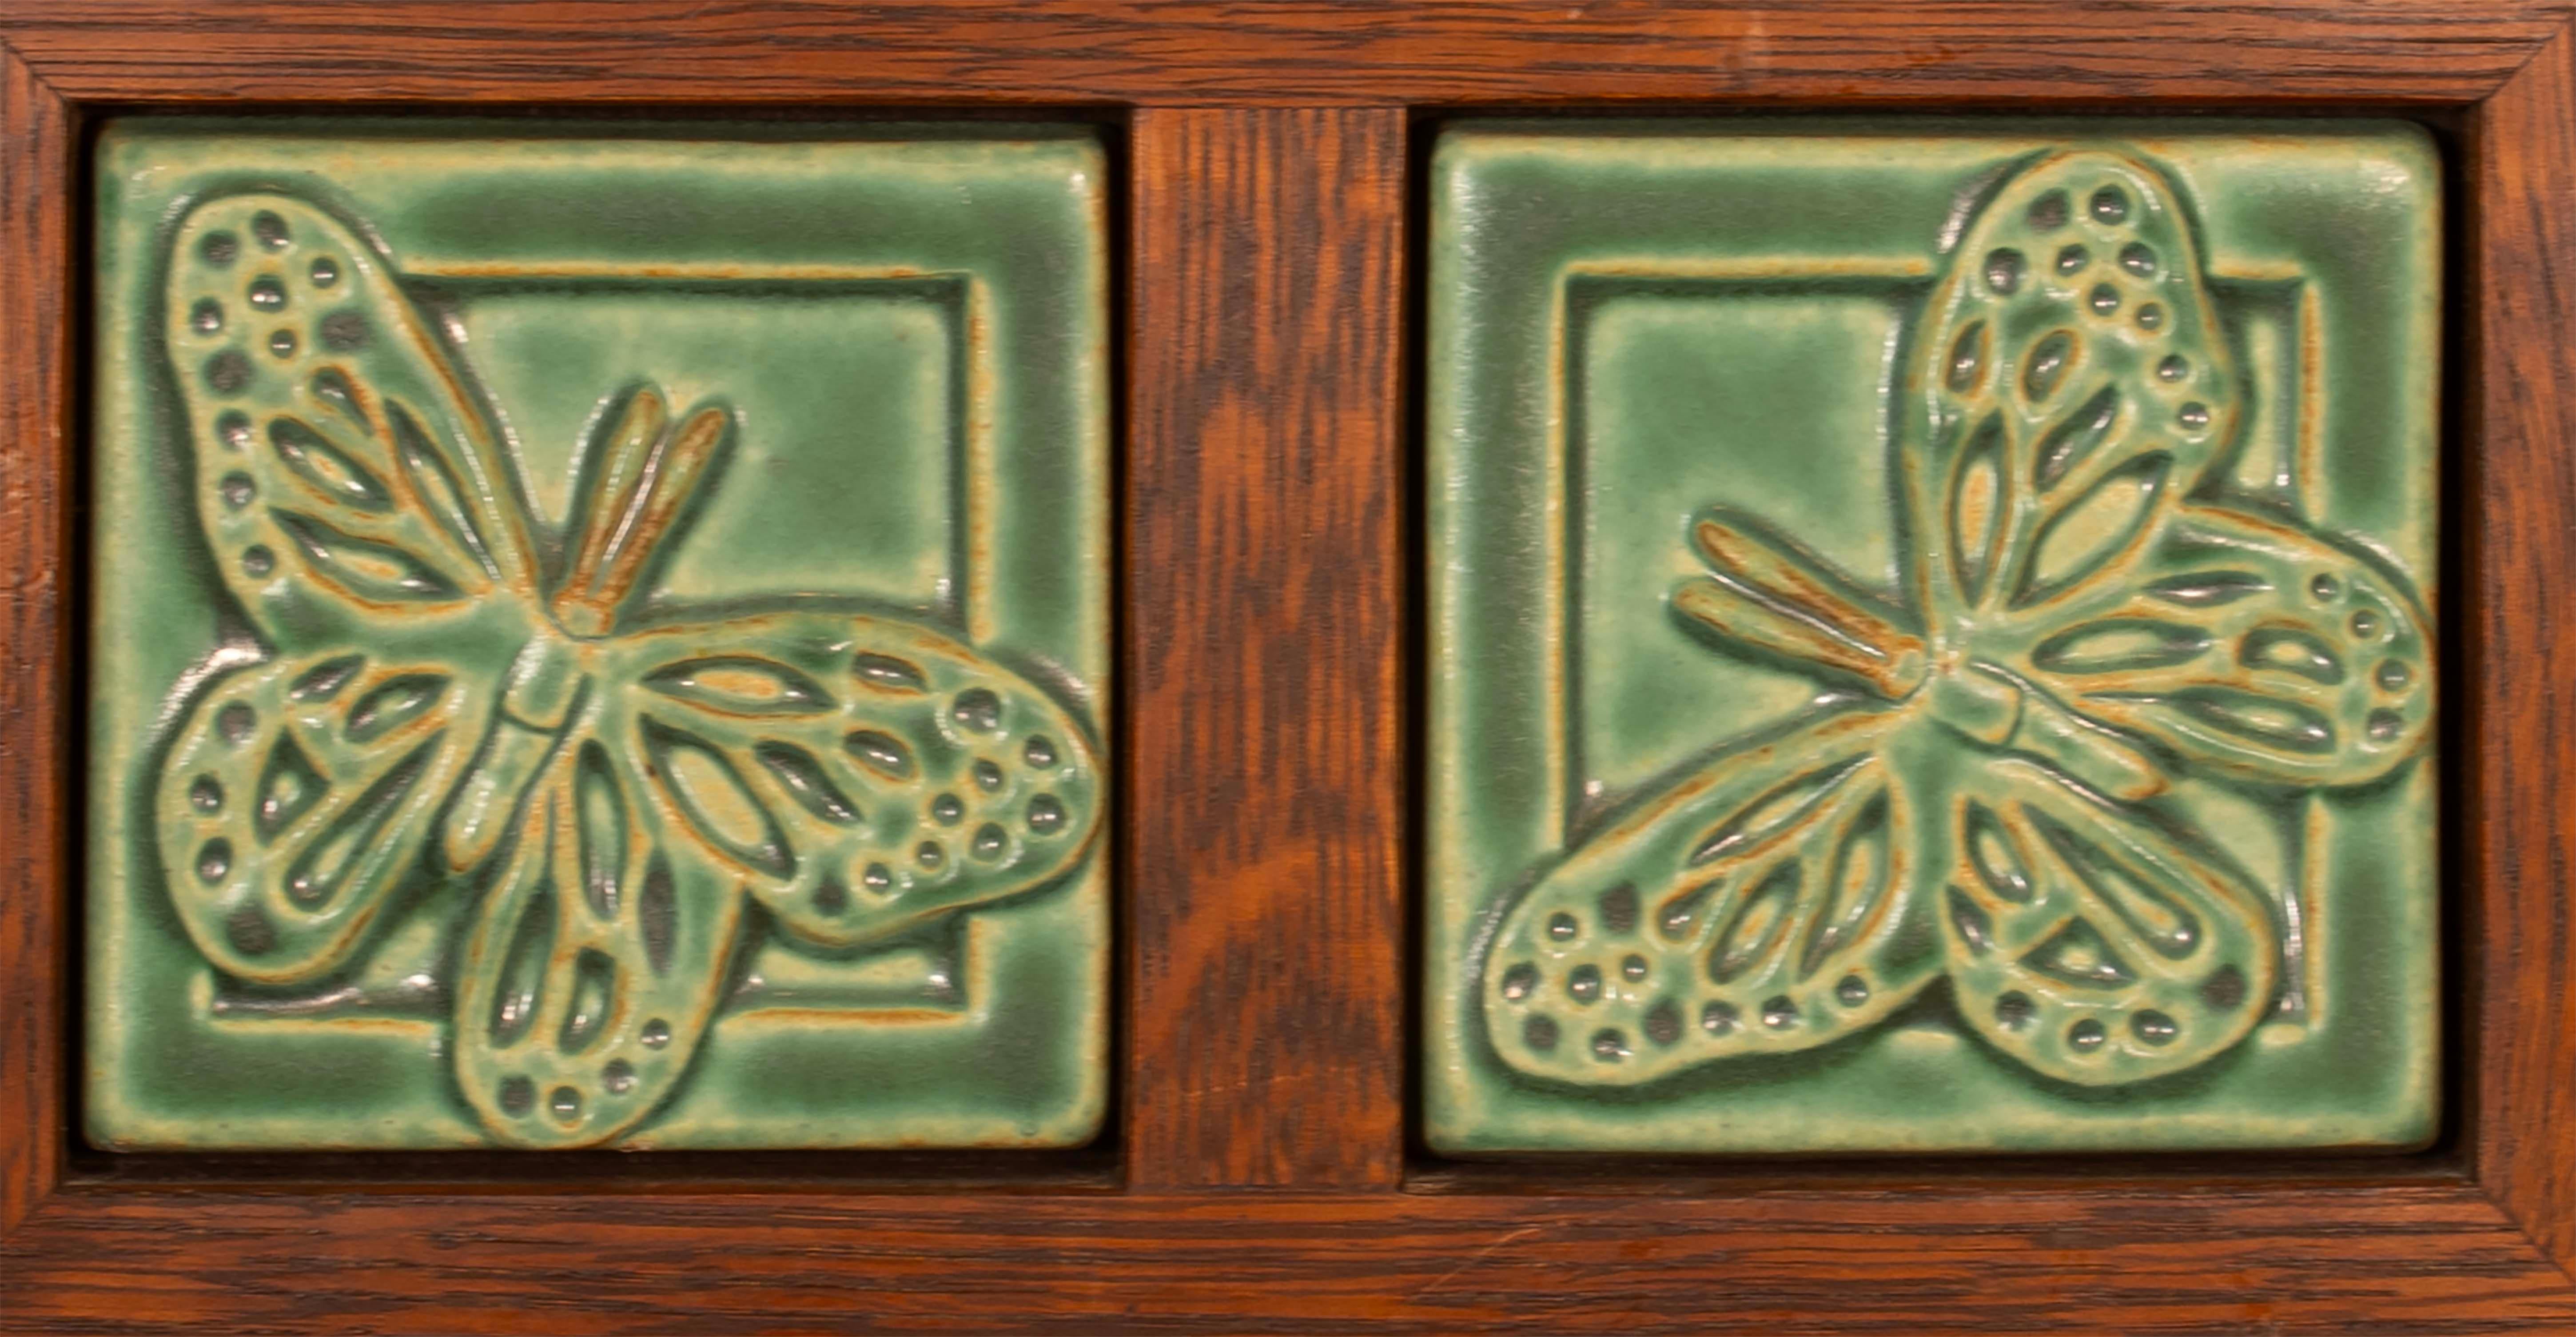 Añade un toque de encanto a tu hogar con estos azulejos de mariposa Pewabic Detroit bellamente enmarcados. Las baldosas cuadradas presentan un impresionante color verde que animará cualquier espacio. Una pieza sencilla pero elegante que encajaría